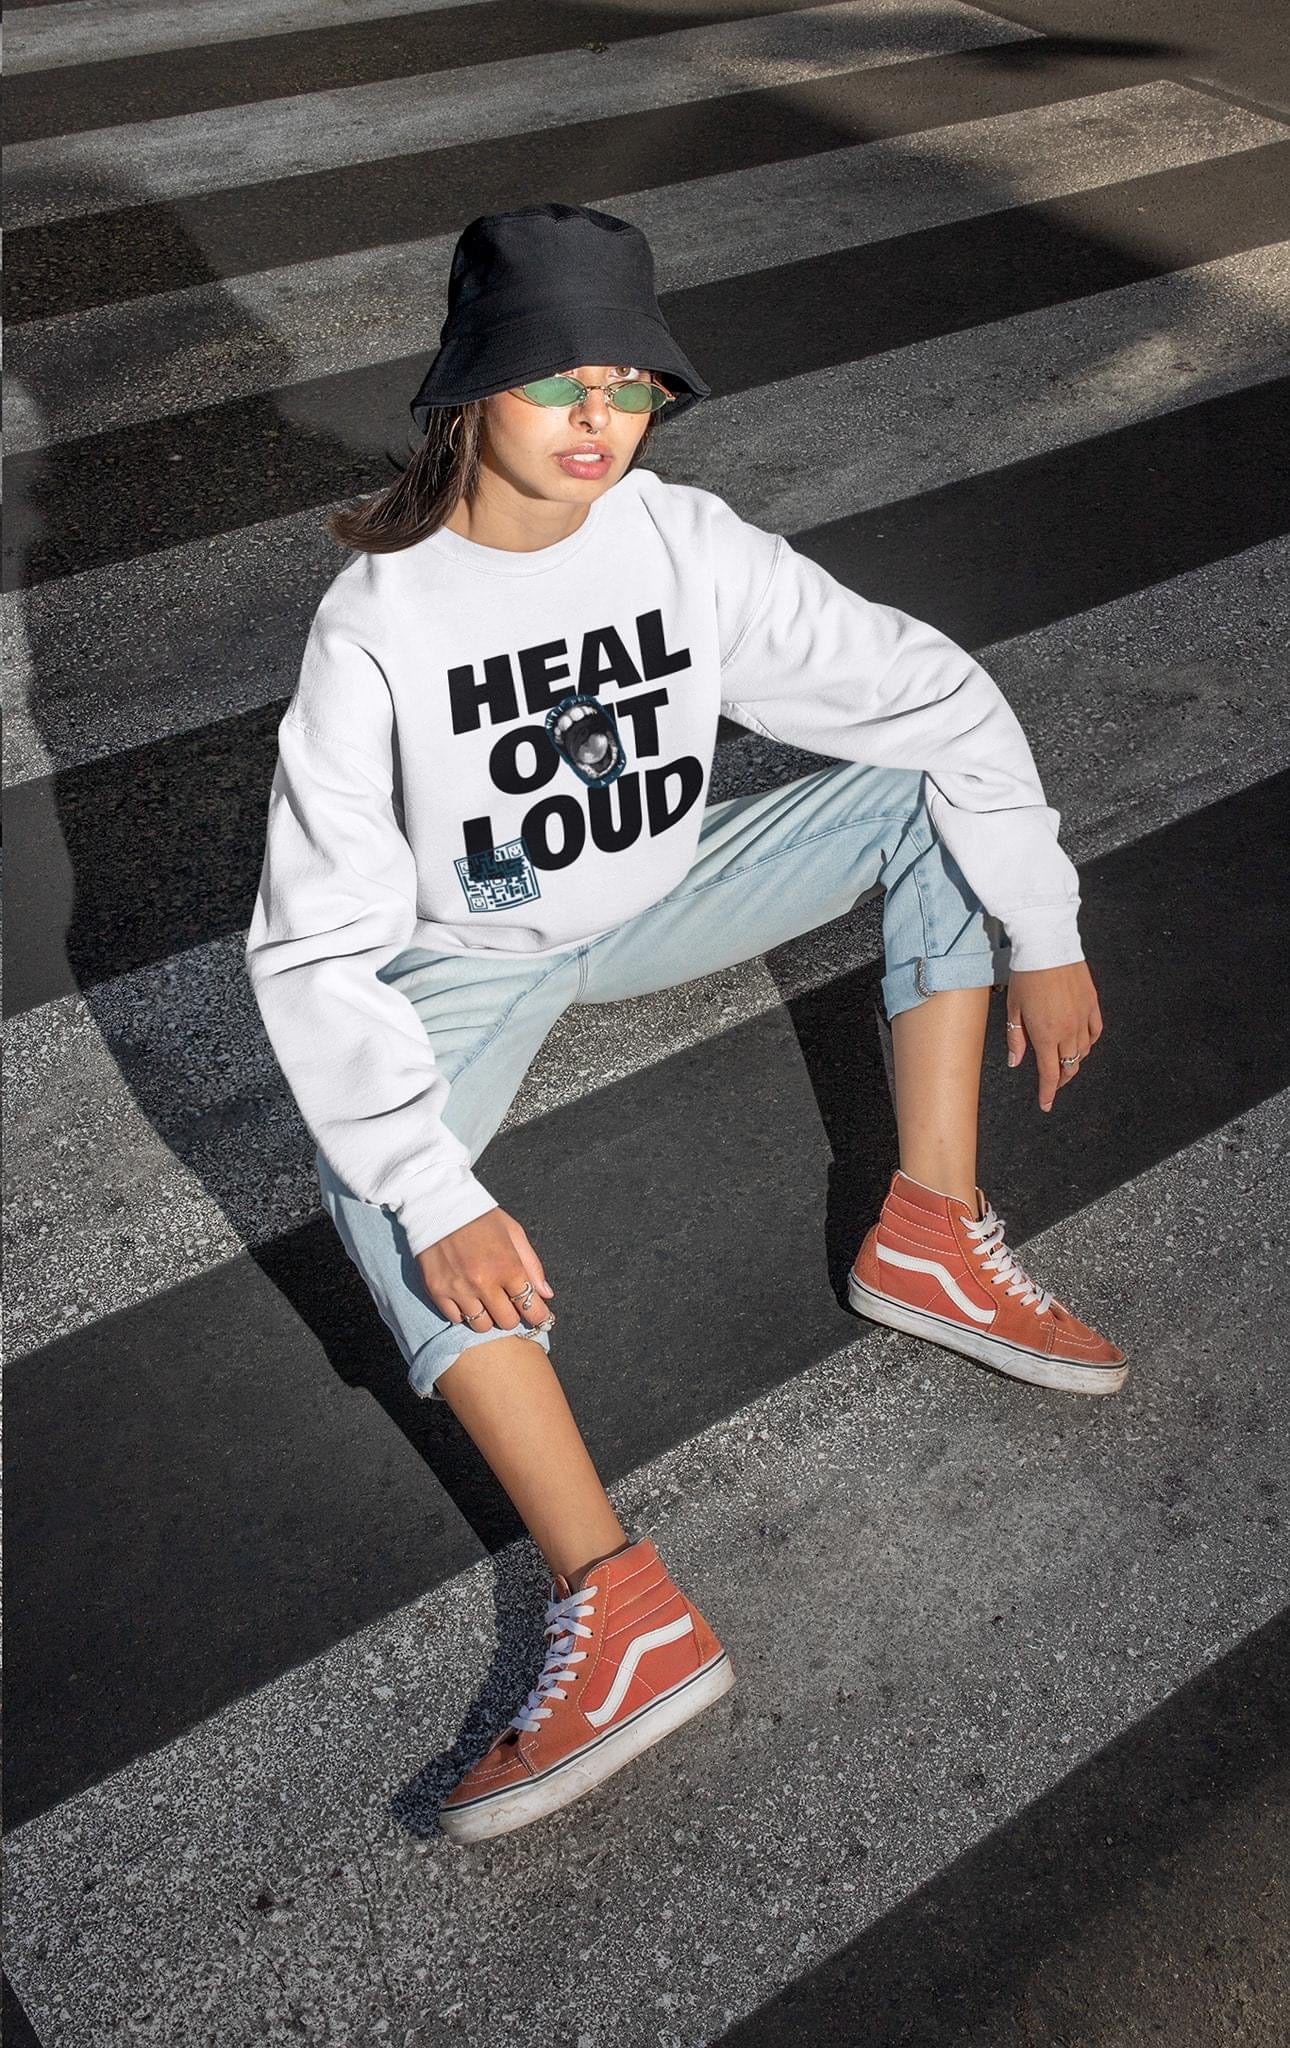 Heal Out Loud Hooded Sweatshirt